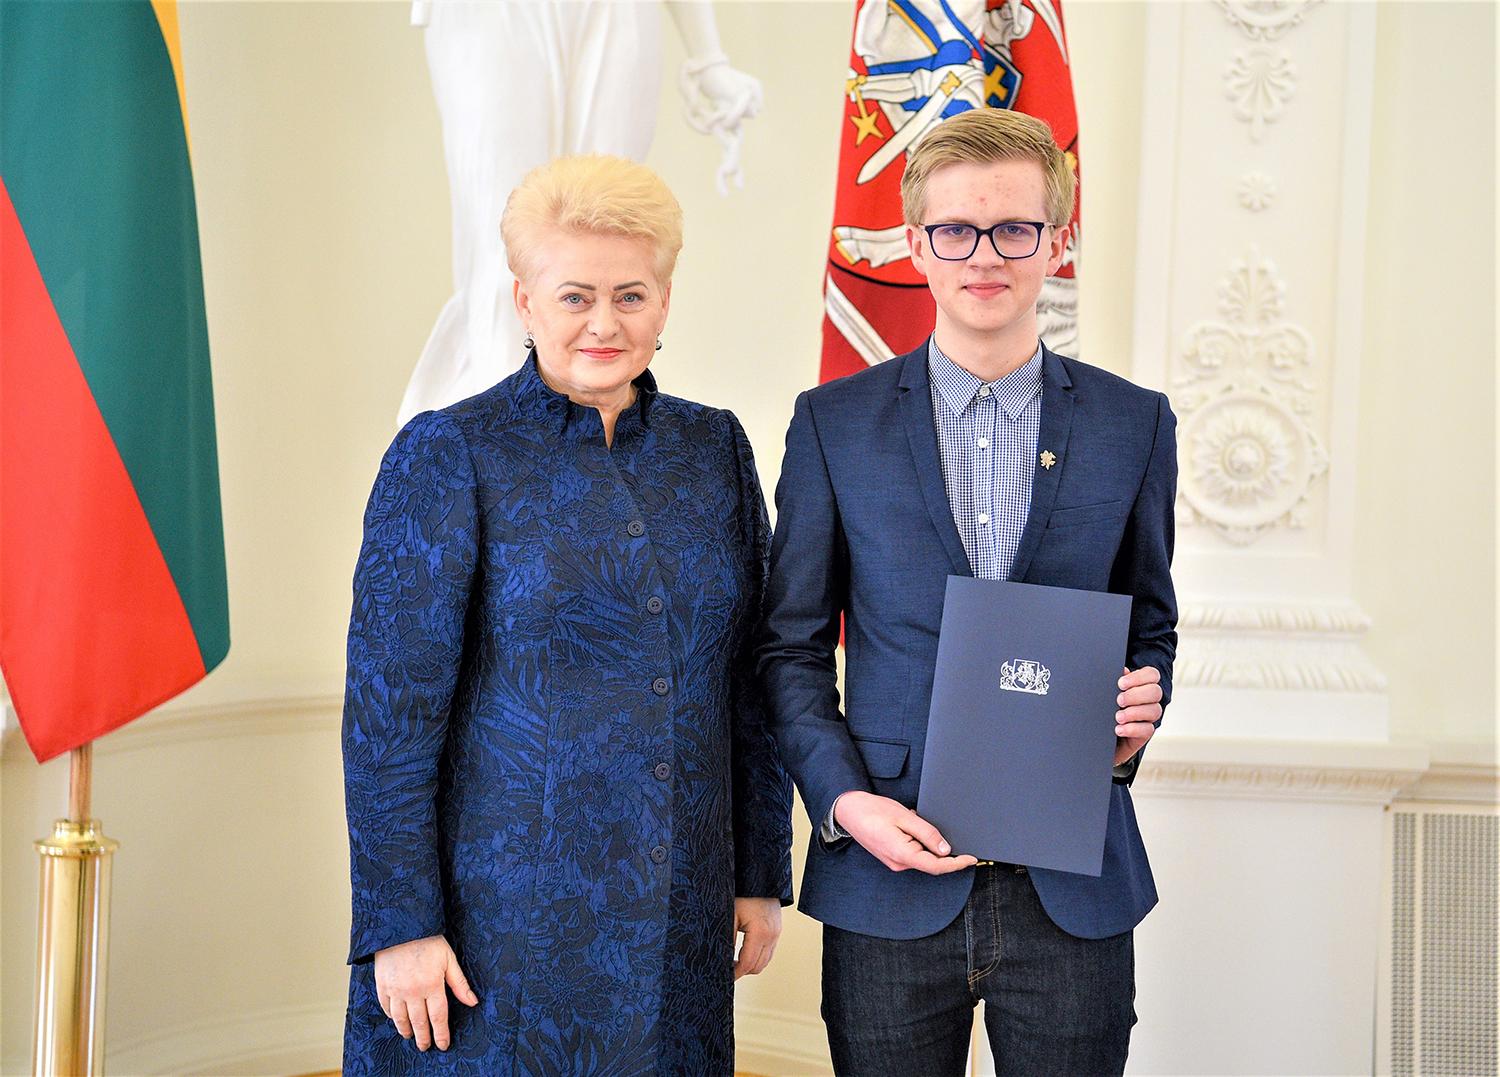 Konkursai ir pergalės tapo moksleivio kasdienybe / Pijus Brazinskas prezidentūroje su Prezidente Dalia Grybauskaite.Asmeninio archyvo nuotr.